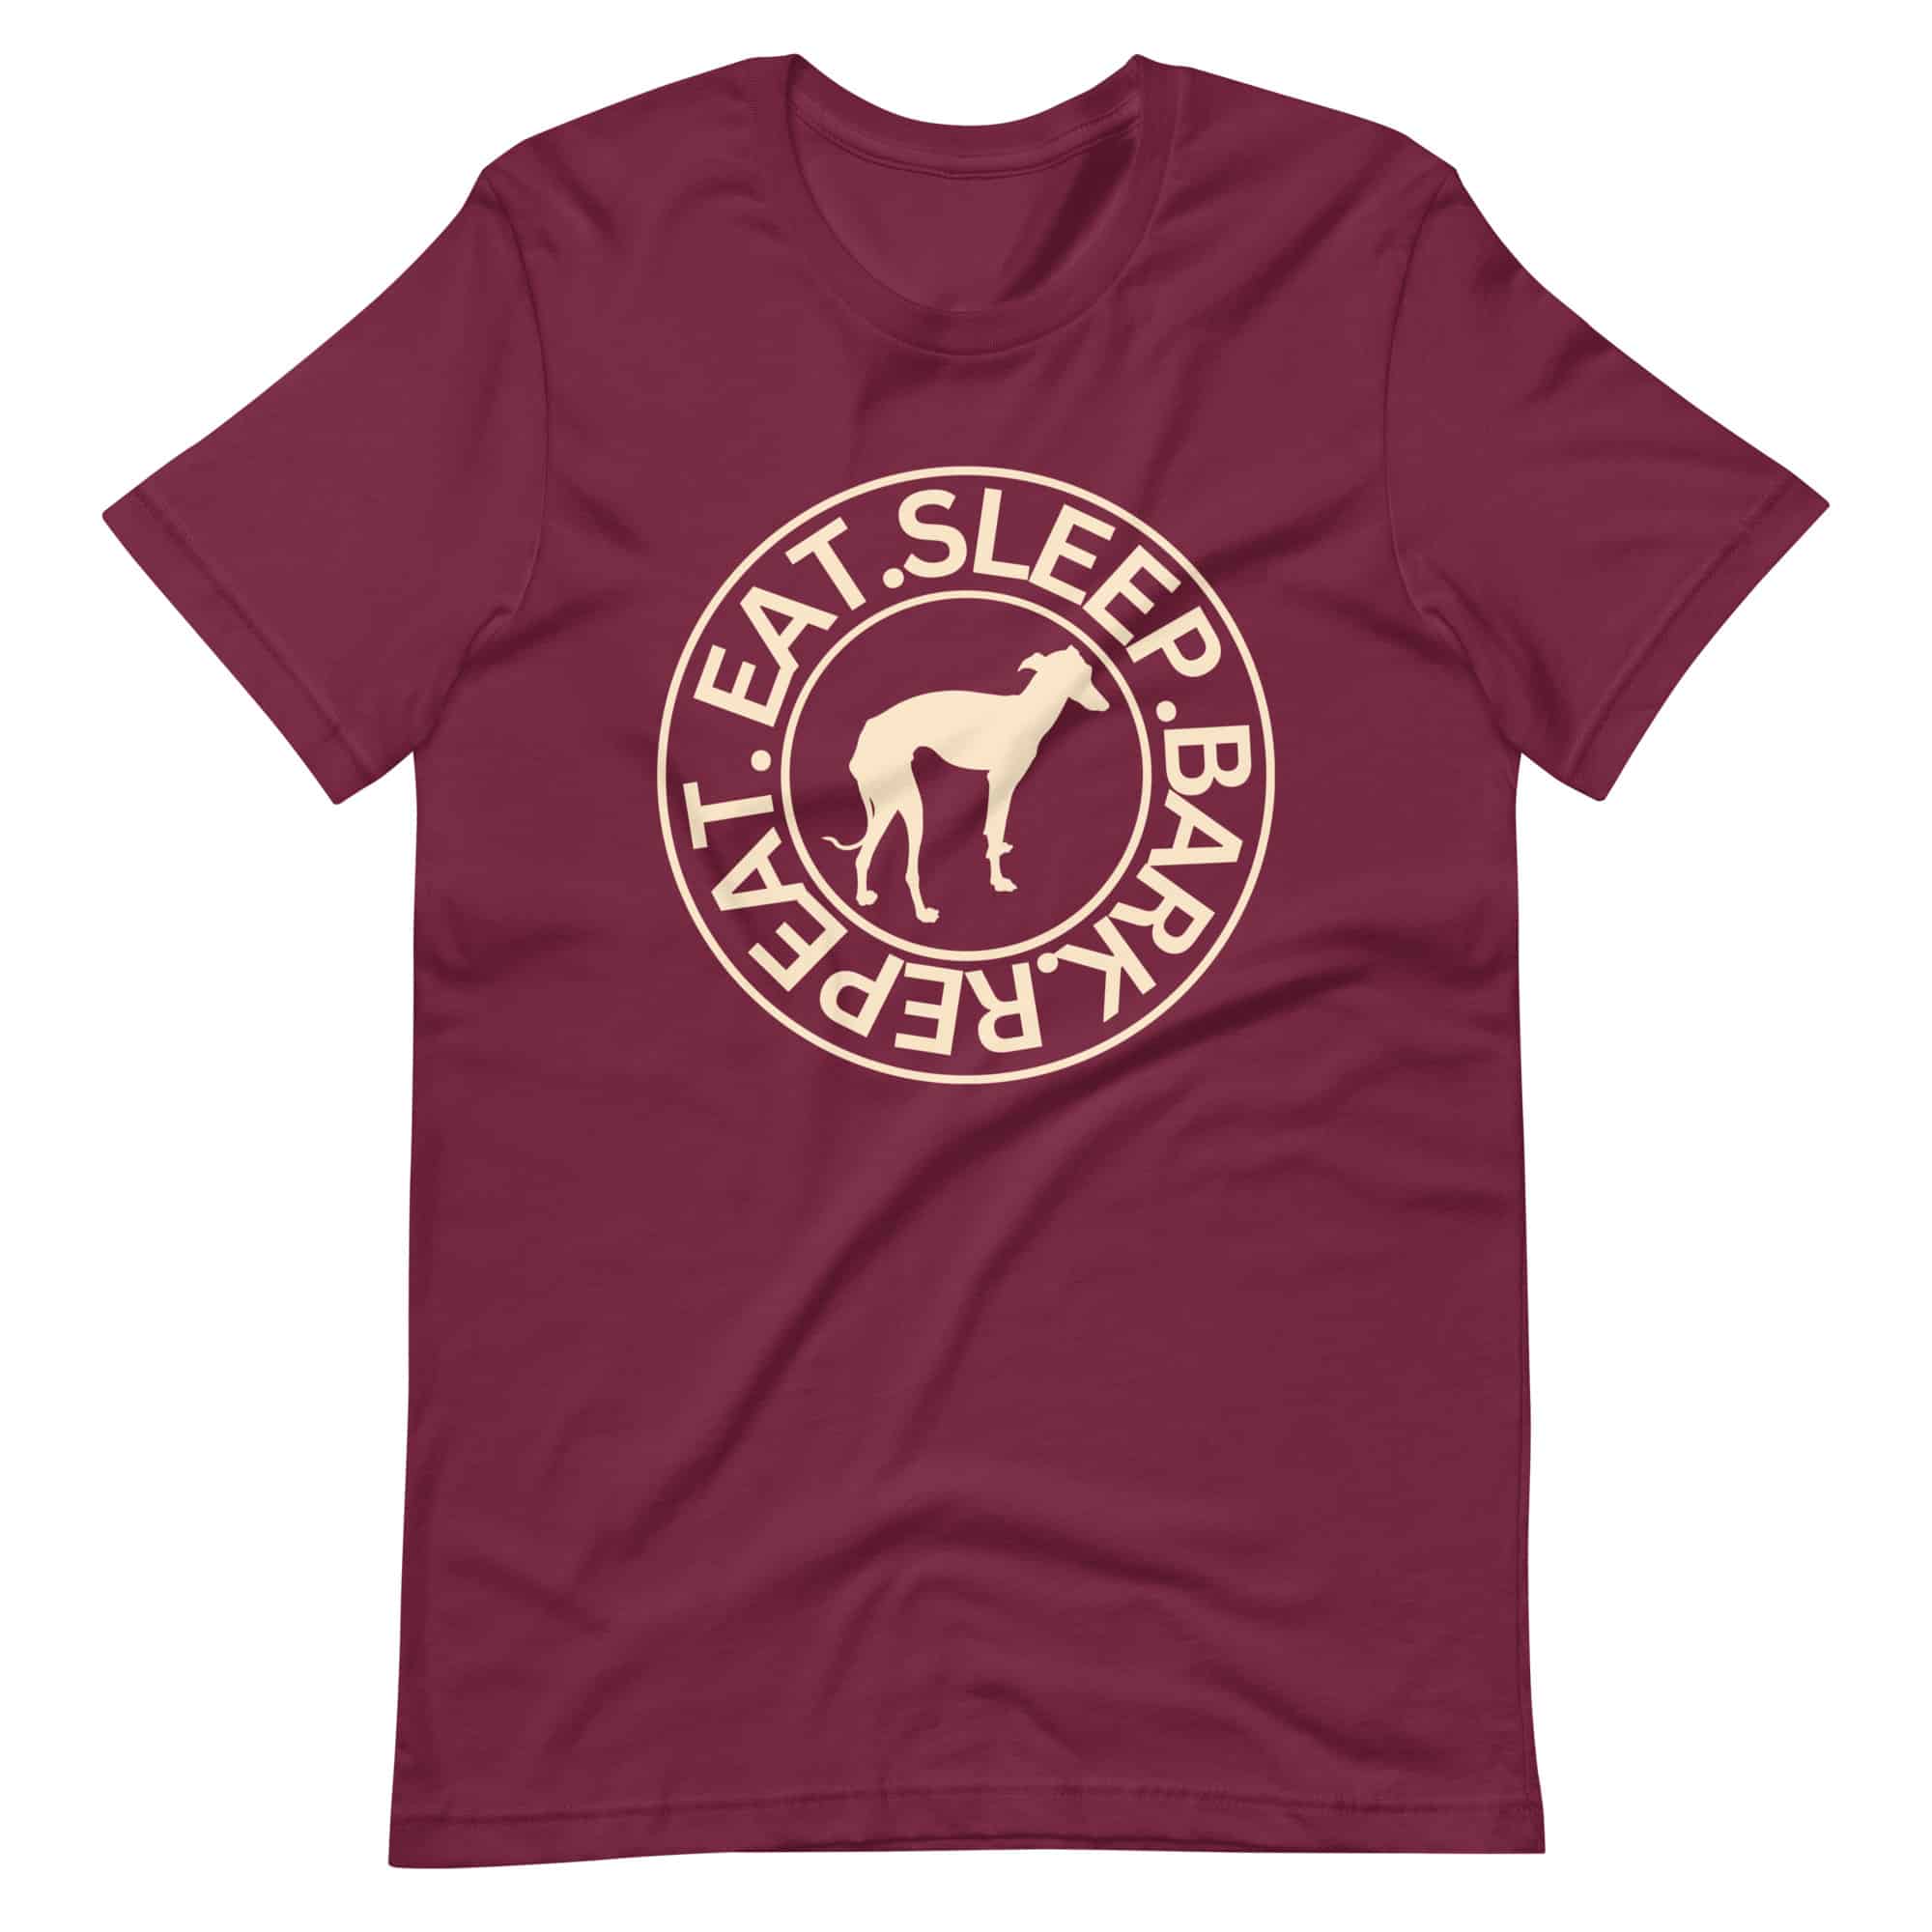 Eat Sleep Bark Repeat Italian Greyhound Unisex T-Shirt. Maroon